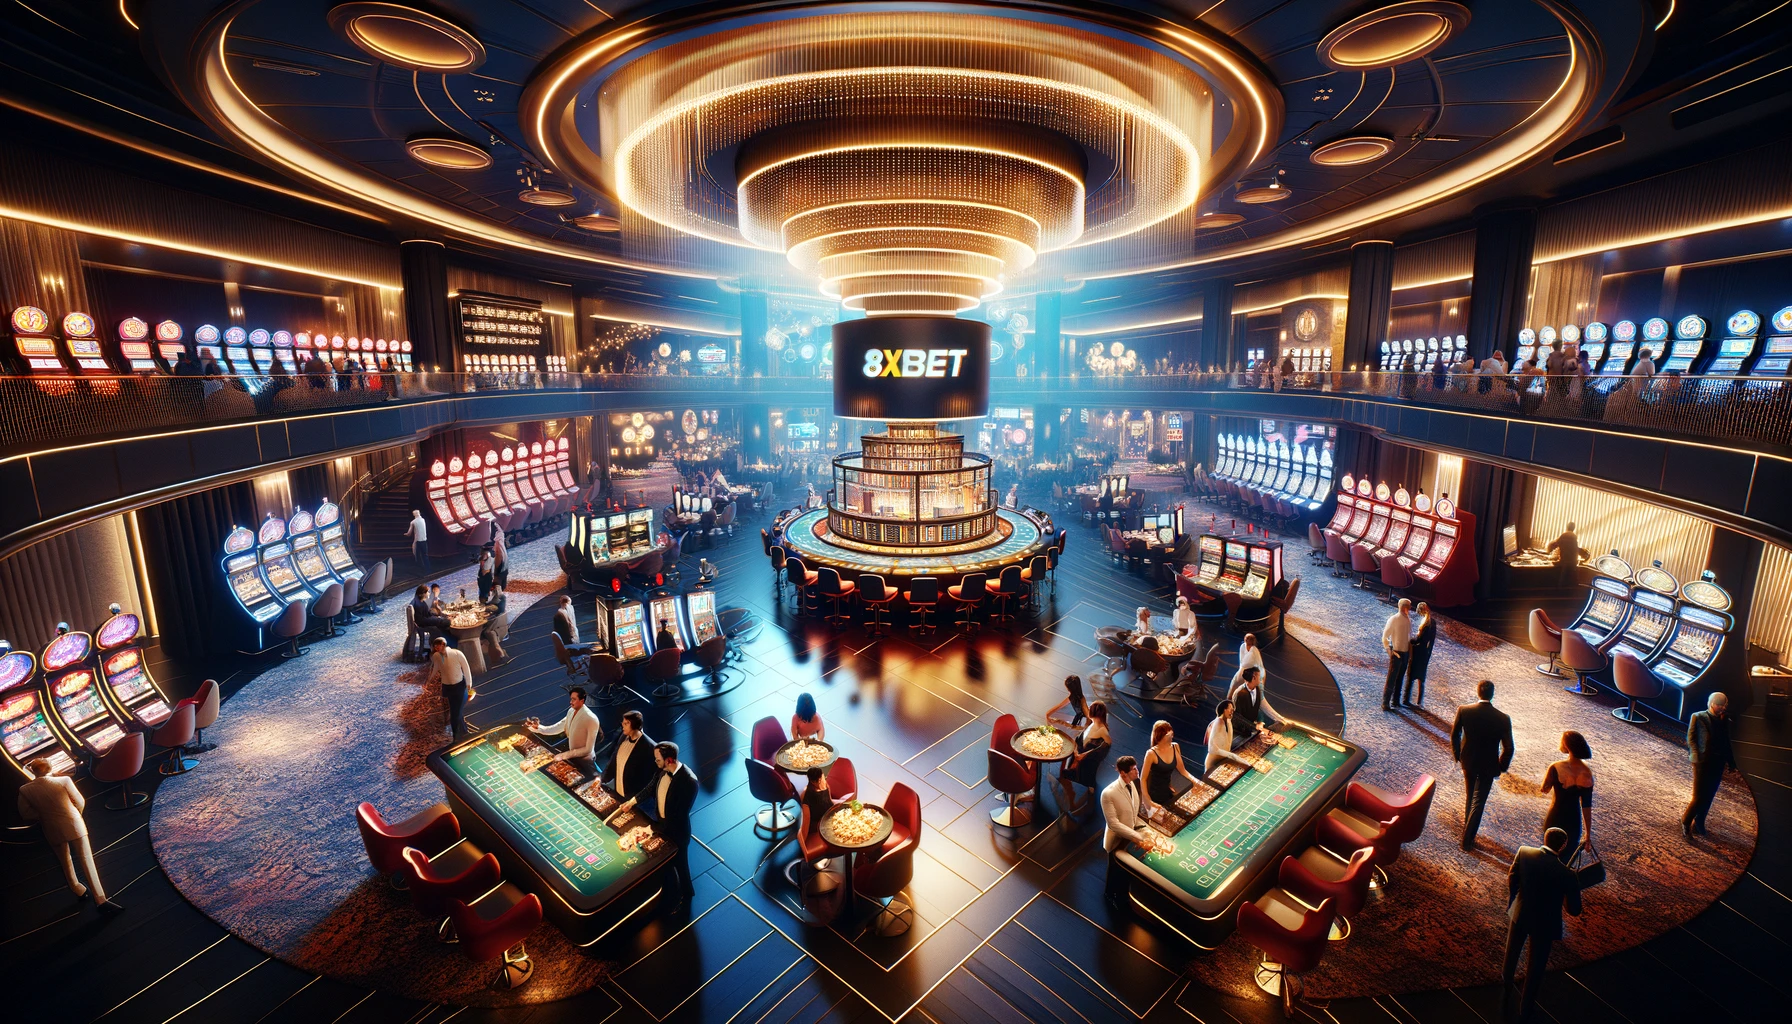 8xbet casino có số lượng người chơi đông đảo